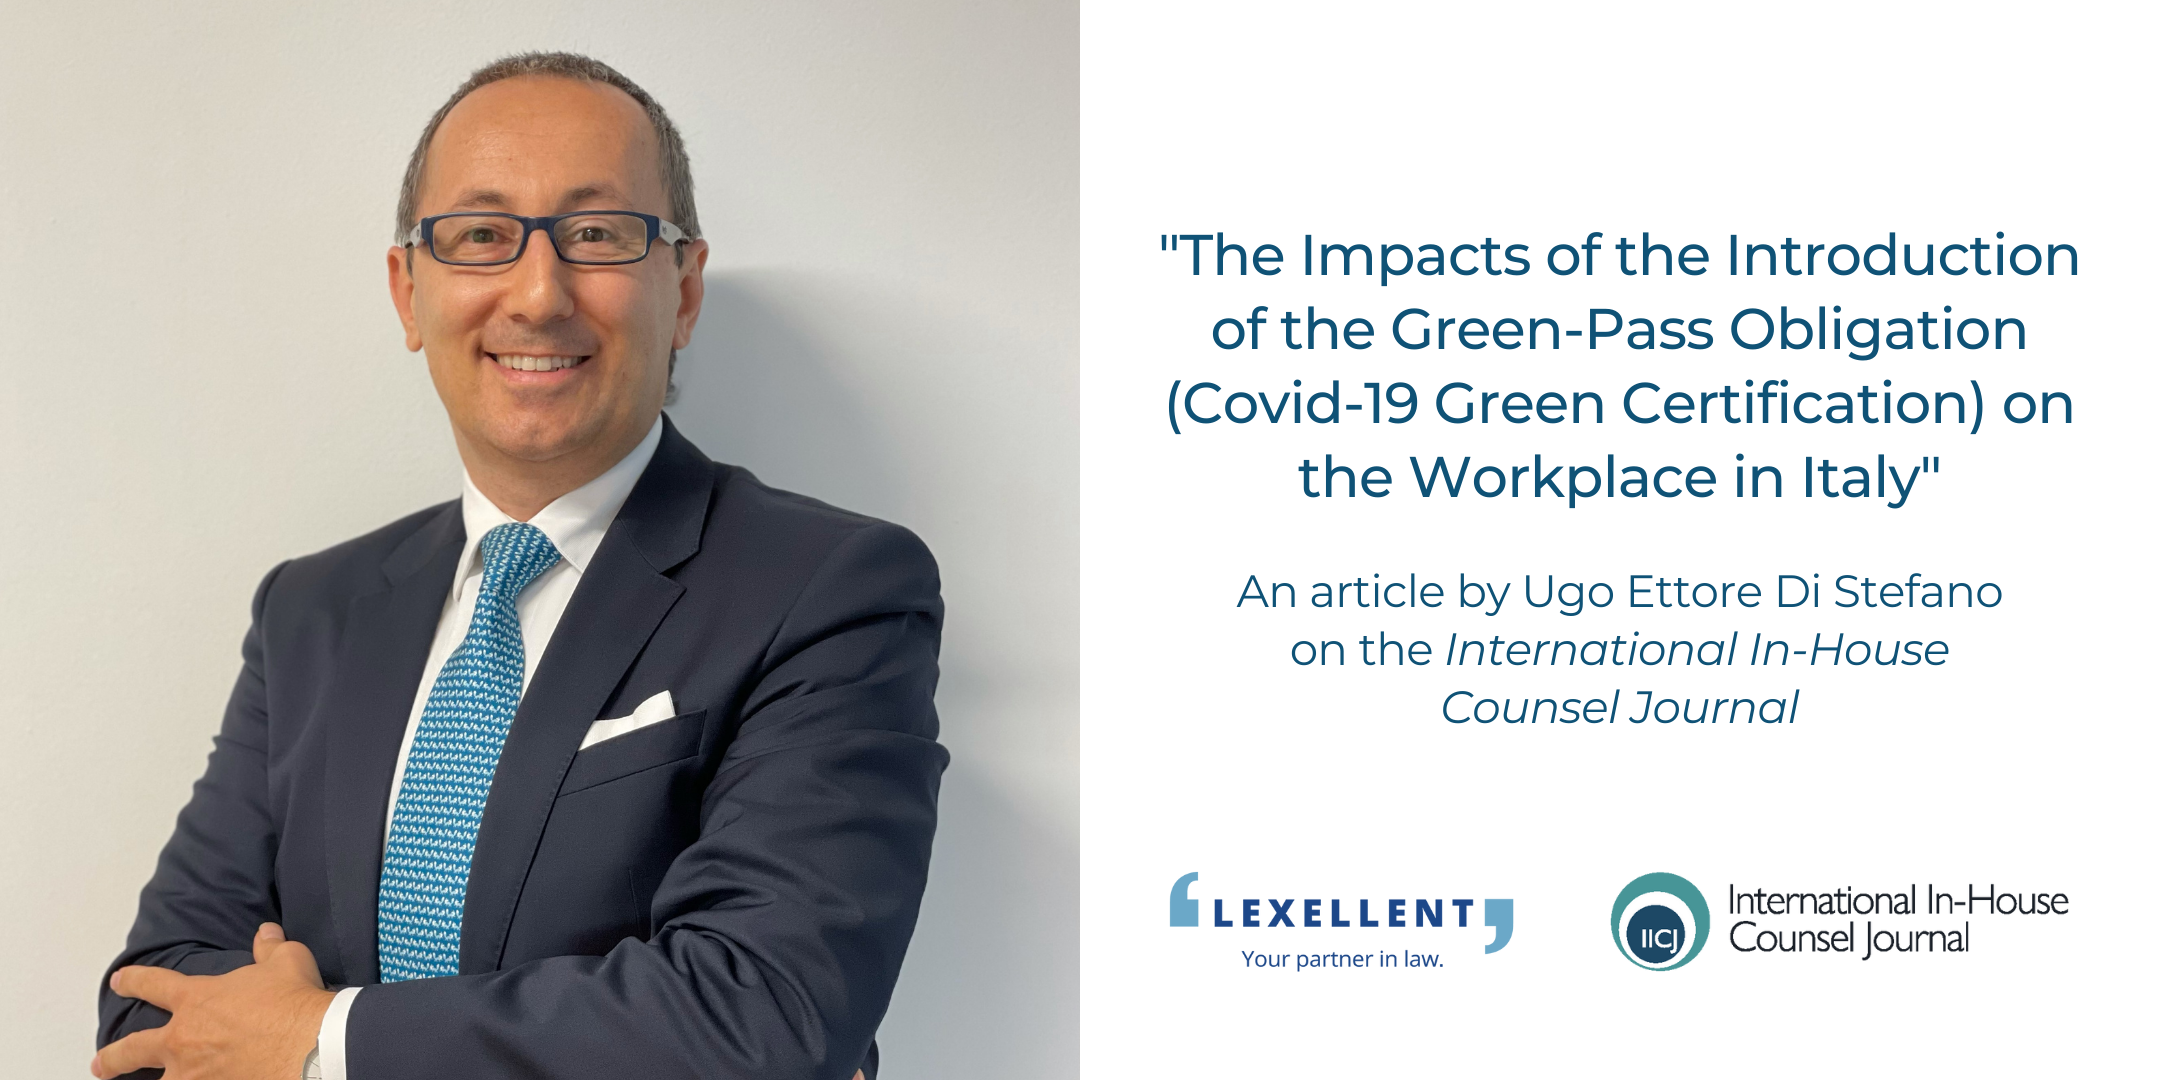 “L’impatto dell’obbligo di Green Pass sul lavoro in Italia”, l’articolo di Ugo Ettore Di Stefano sull’International In-House Counsel Journal